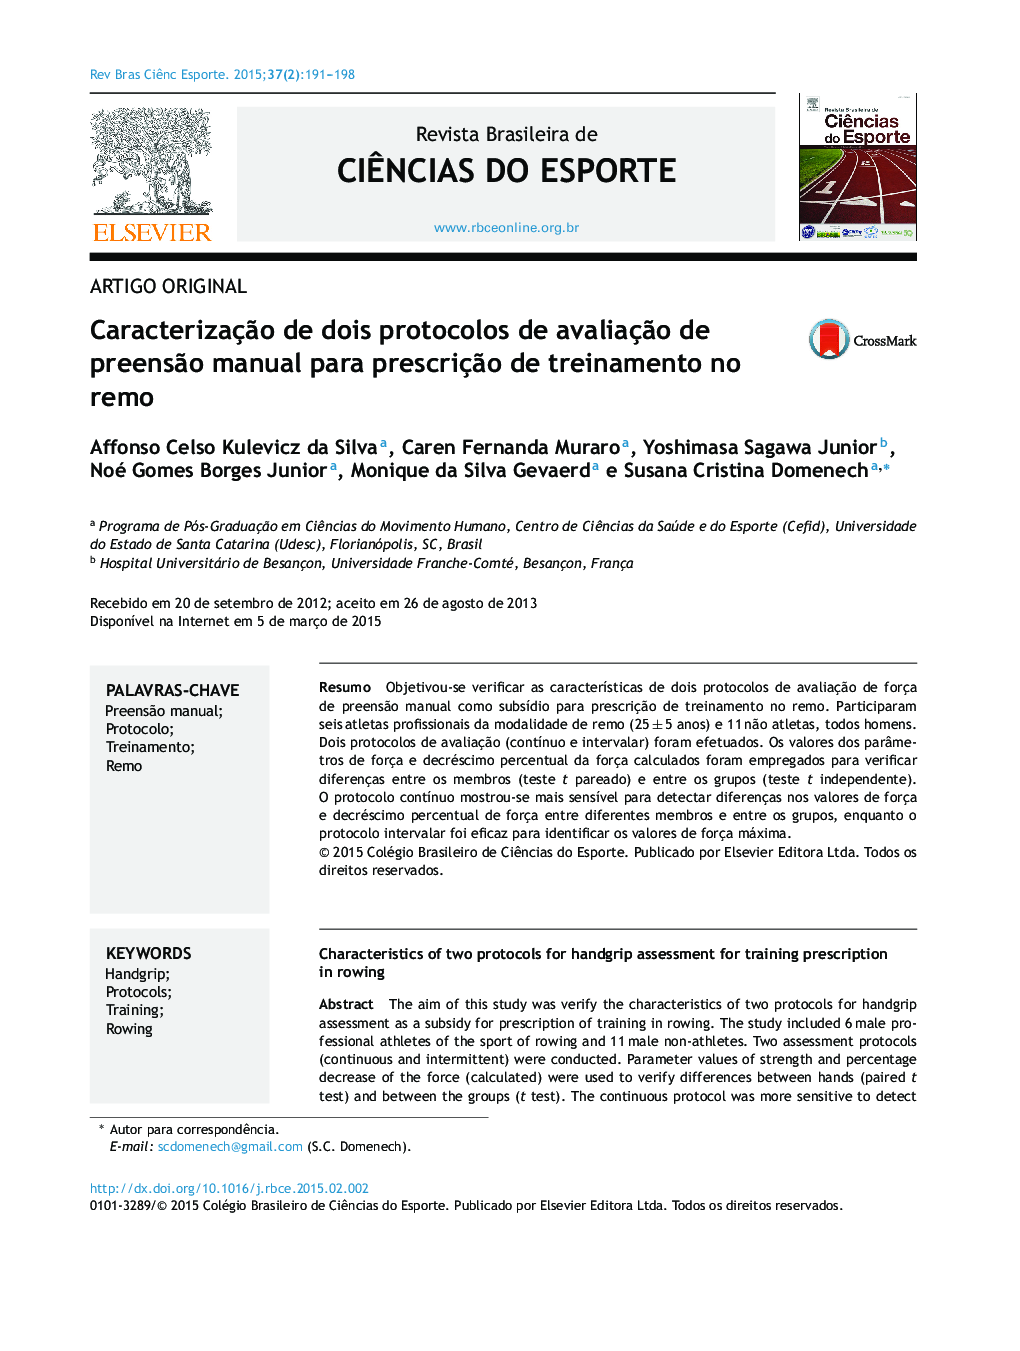 Caracterização de dois protocolos de avaliação de preensão manual para prescrição de treinamento no remo